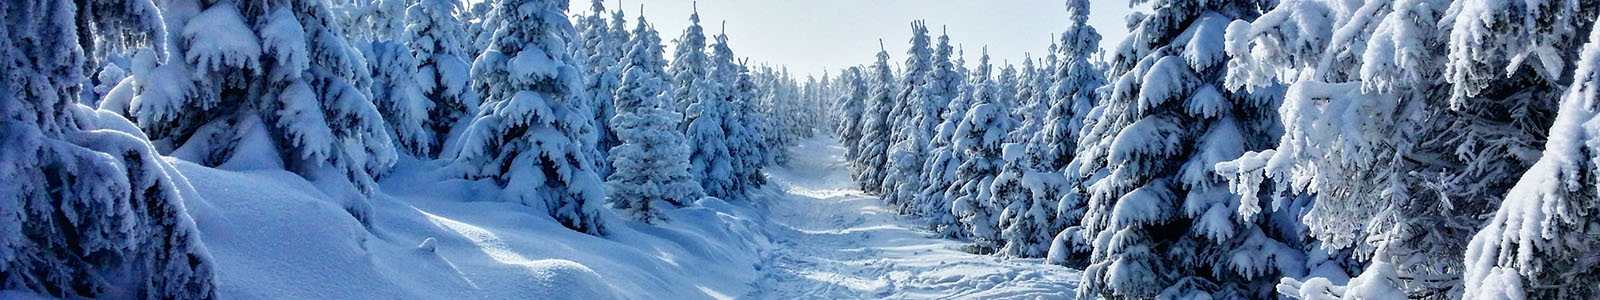 Hoe ziet kerst in Finland eruit?